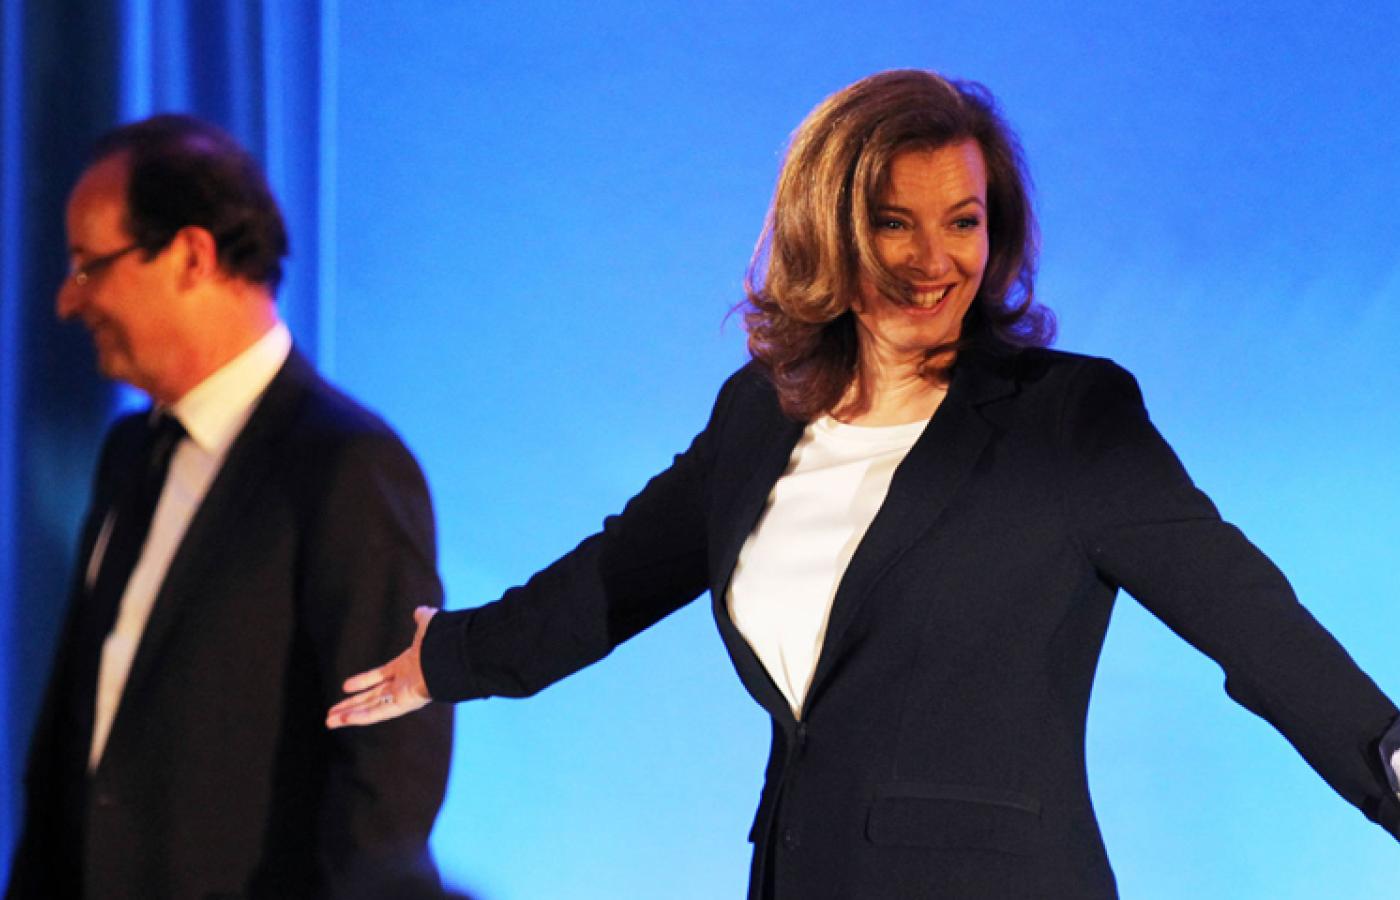 François Hollande i Valérie Trierweiler jeszcze kiedy byli razem, czyli podczas kampanii prezydenckiej w 2012 r.